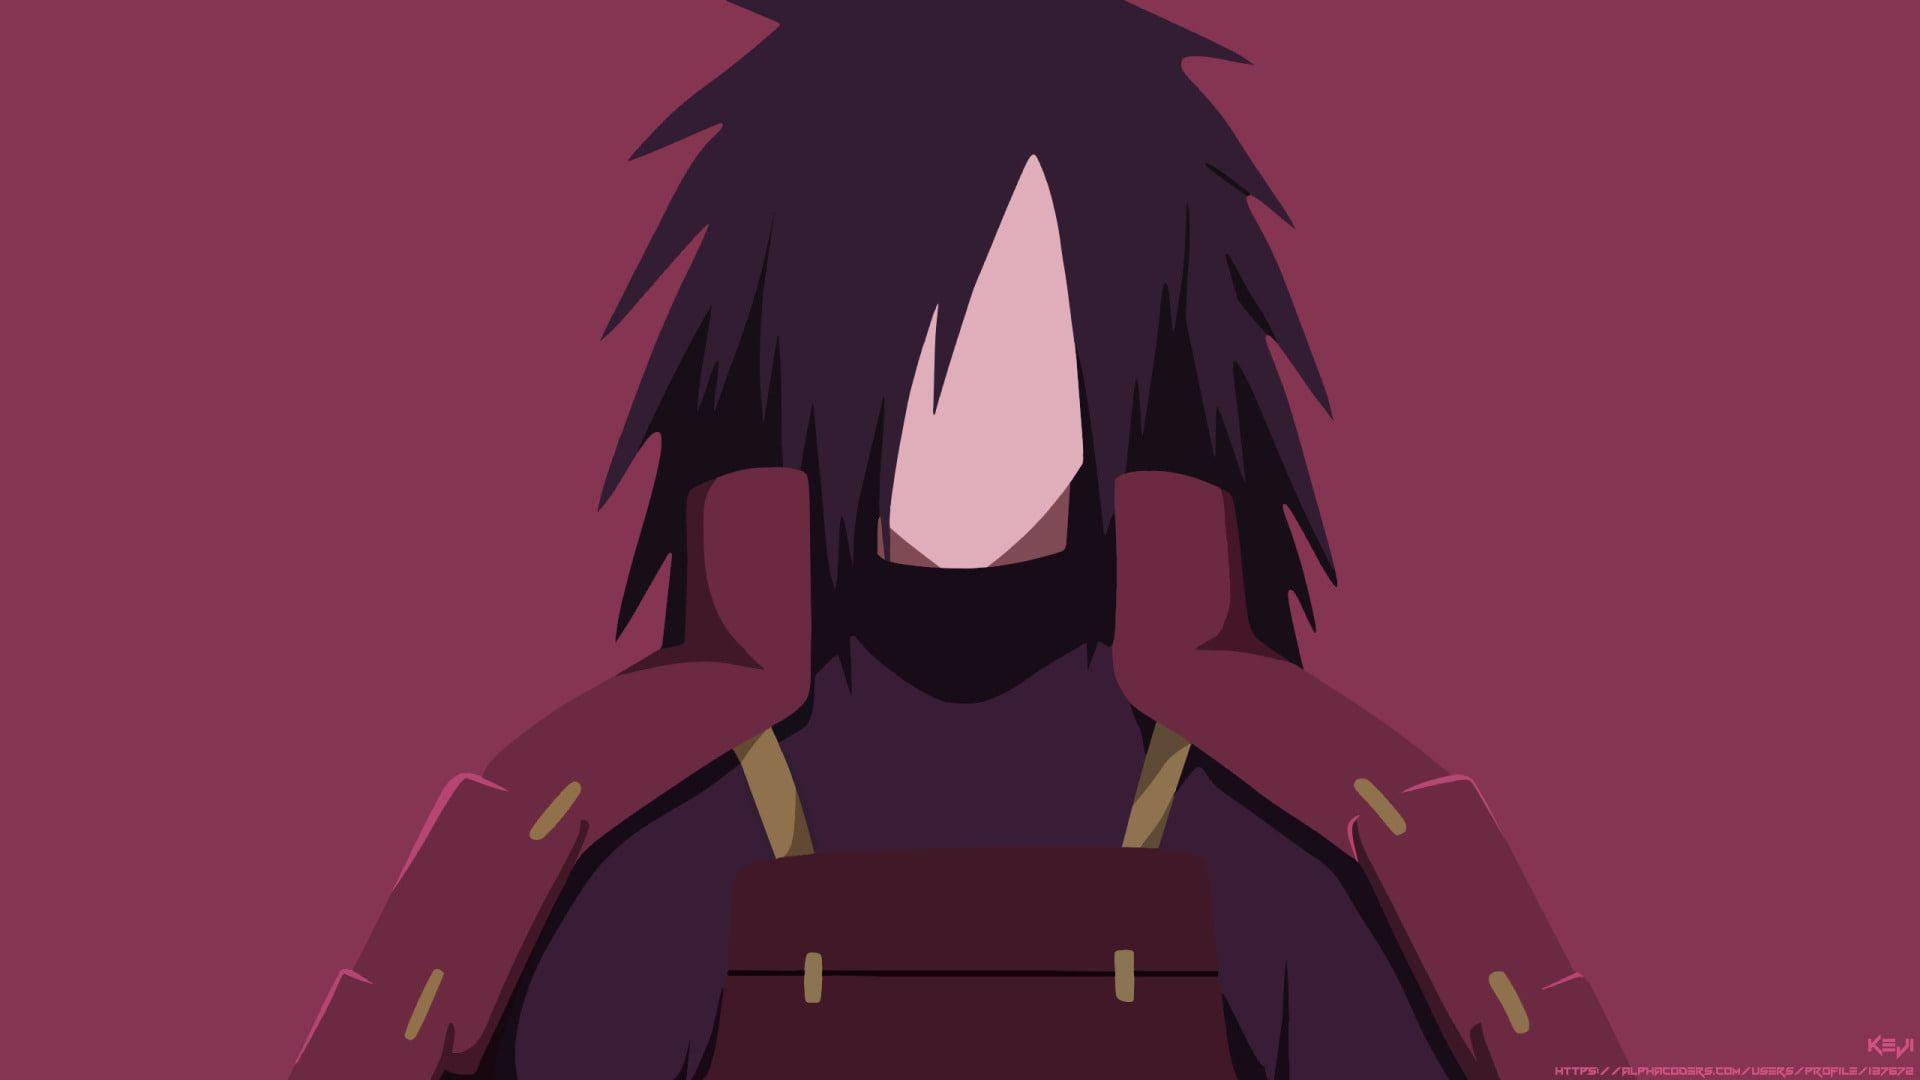 1920x1080 Anime #Naruto Tóc đen #Boy Madara Uchiha #Minimalist Uchiha Clan P # hình nền #hdwallpaper #desktop.  Naruto hình nền, Anime, HD nền